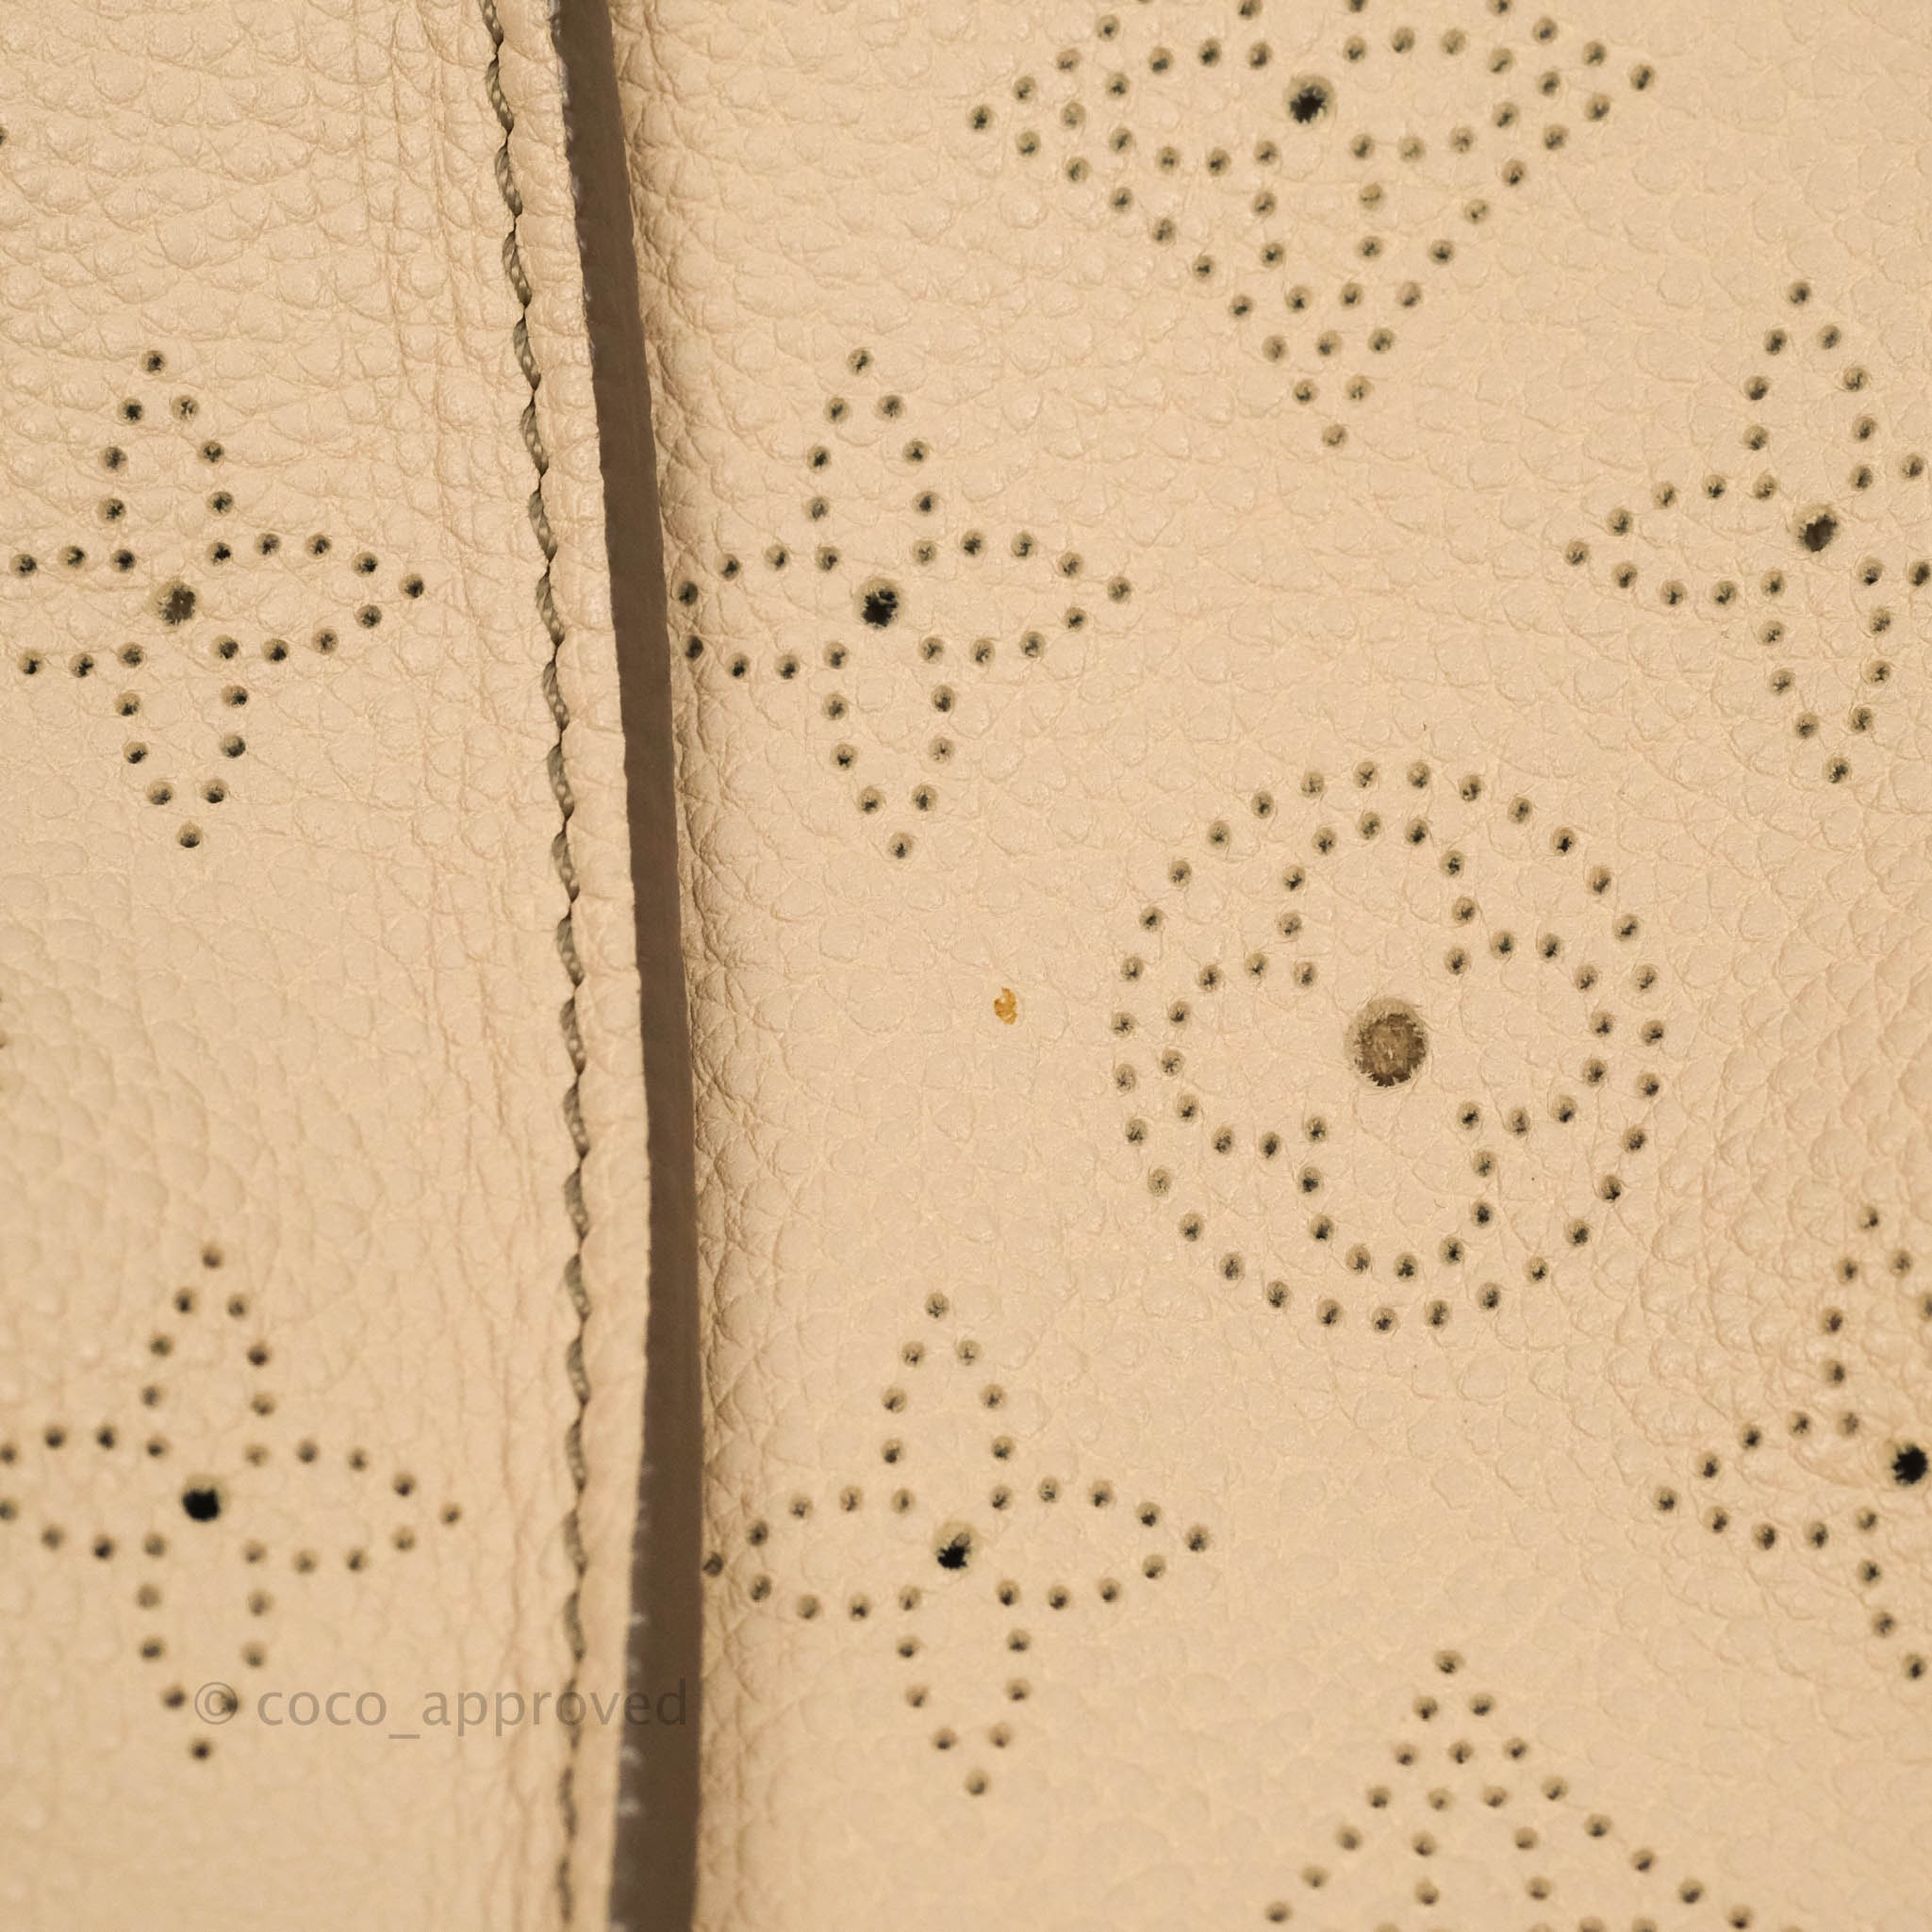 Louis Vuitton Mahina Selene MM Bag Monogram Taupe Calfskin – Coco